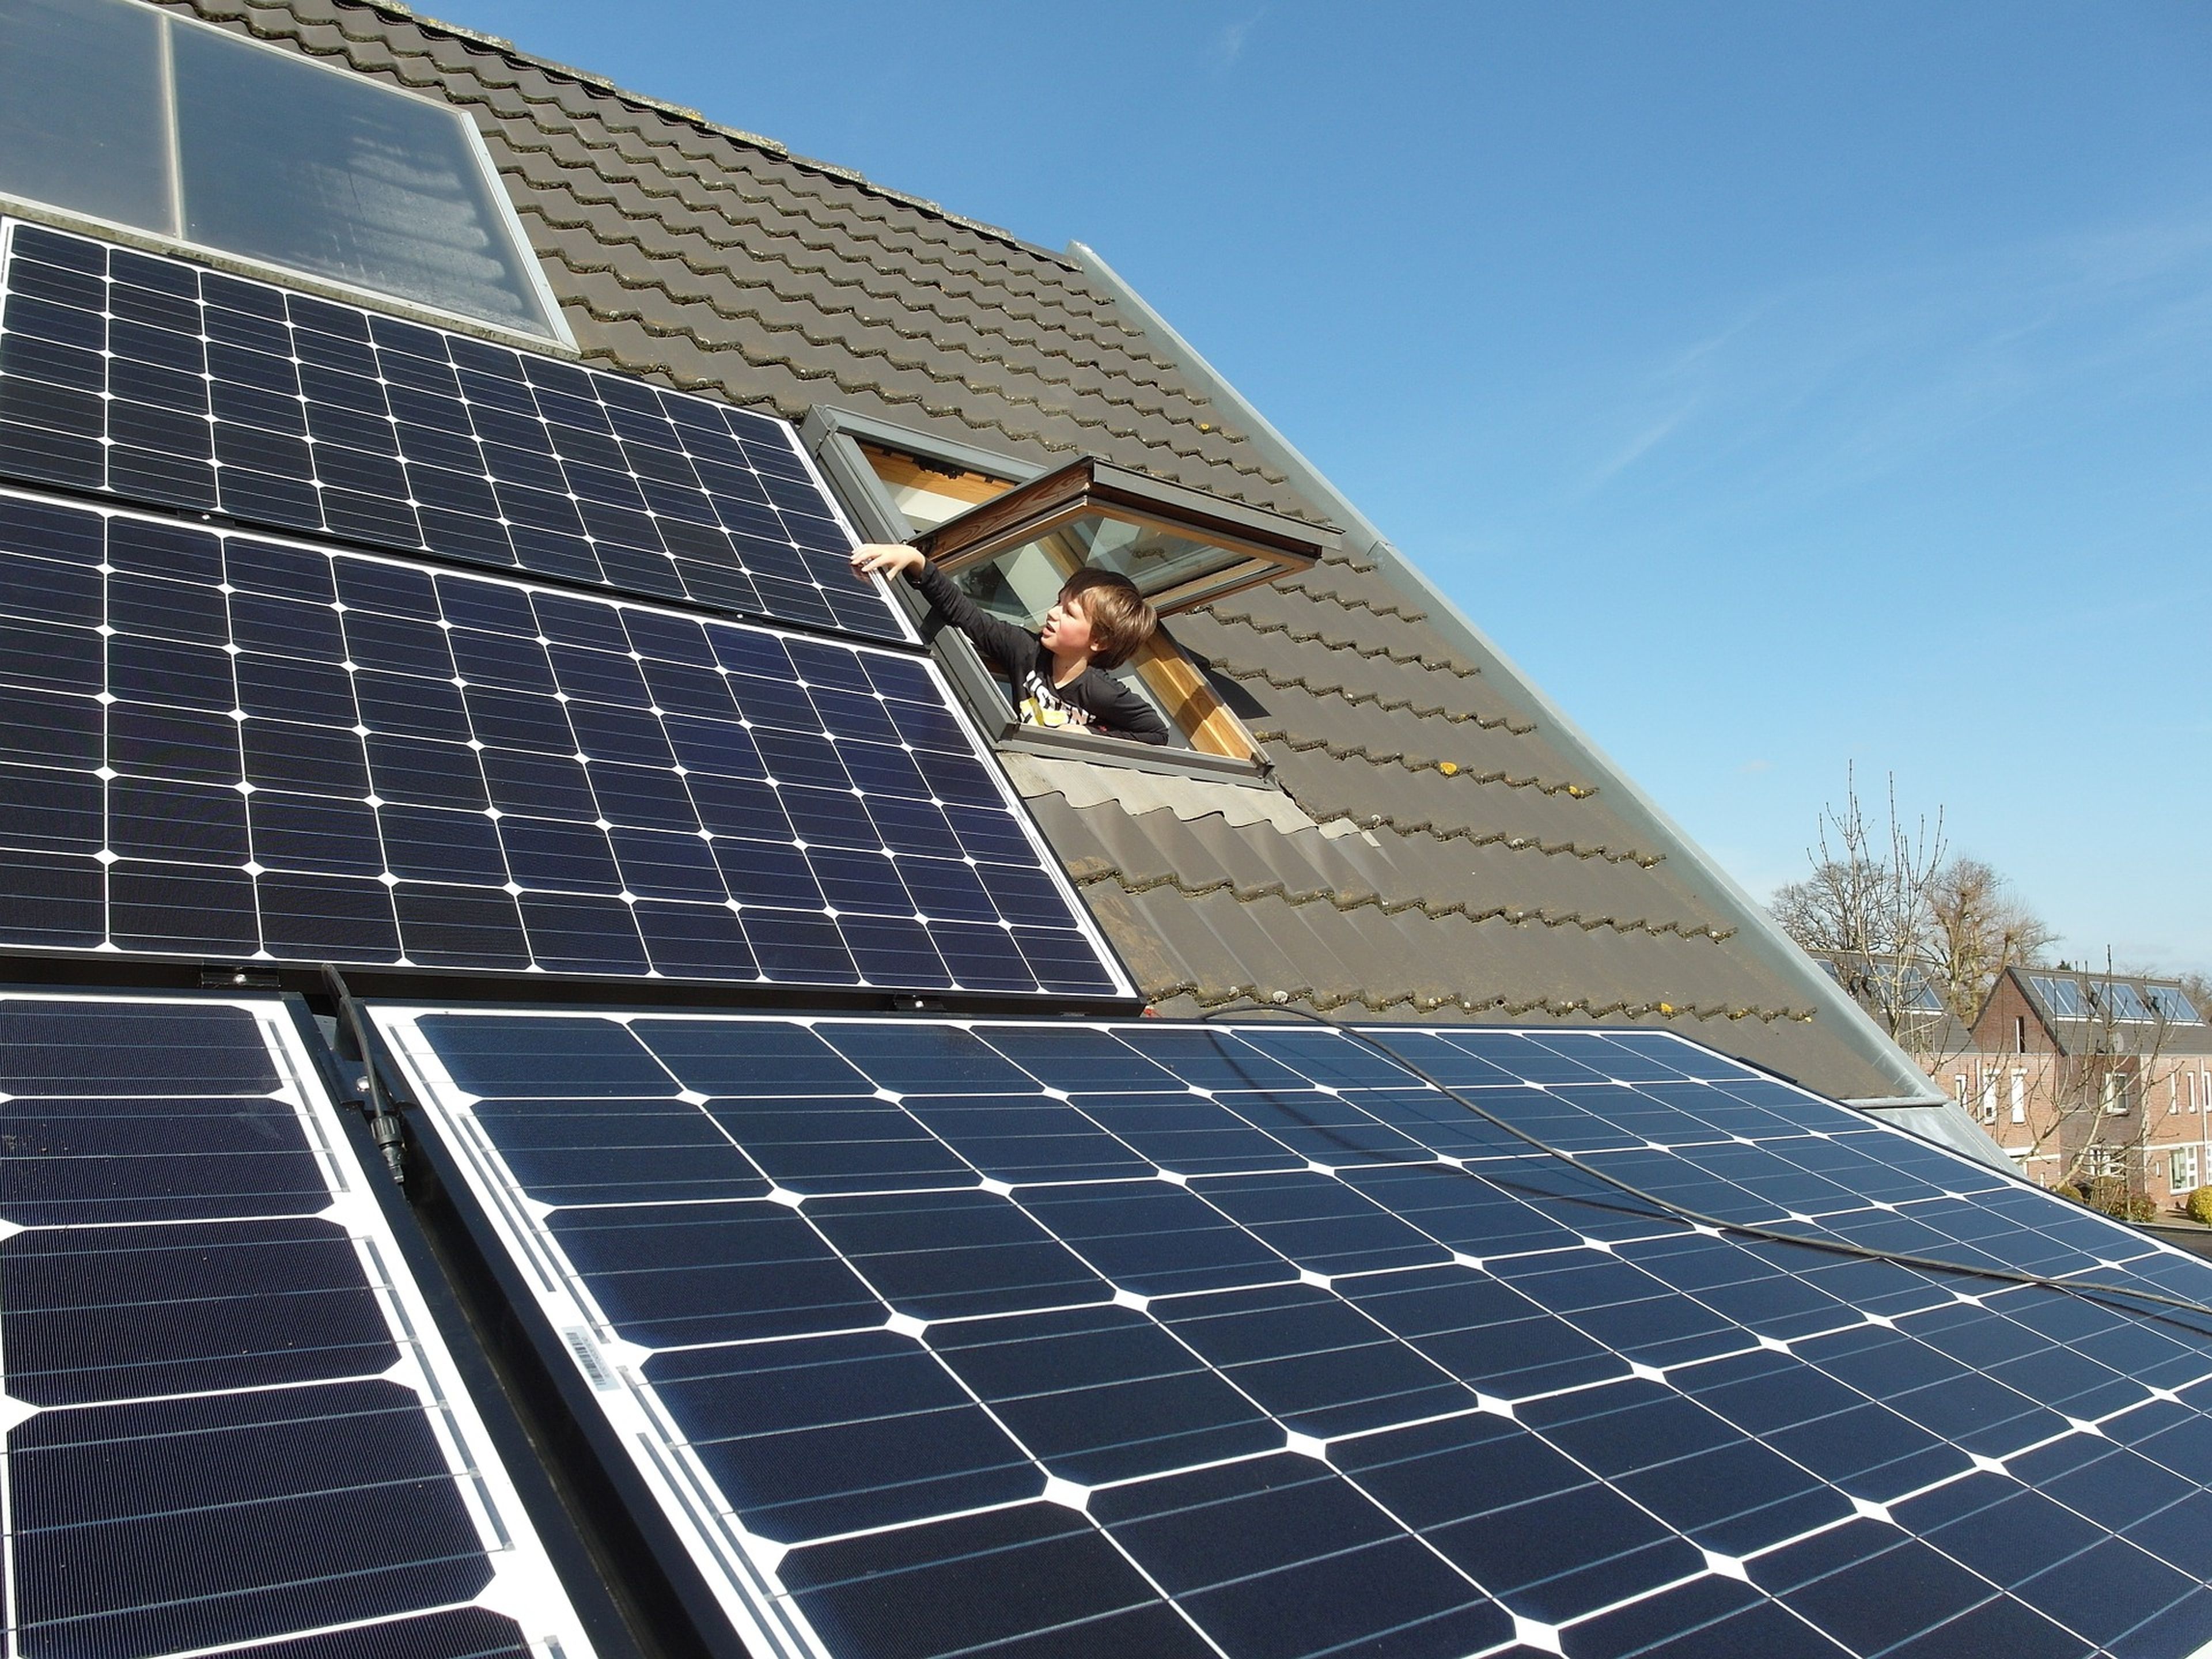 Un niño toca unas placas solares en el tejado.